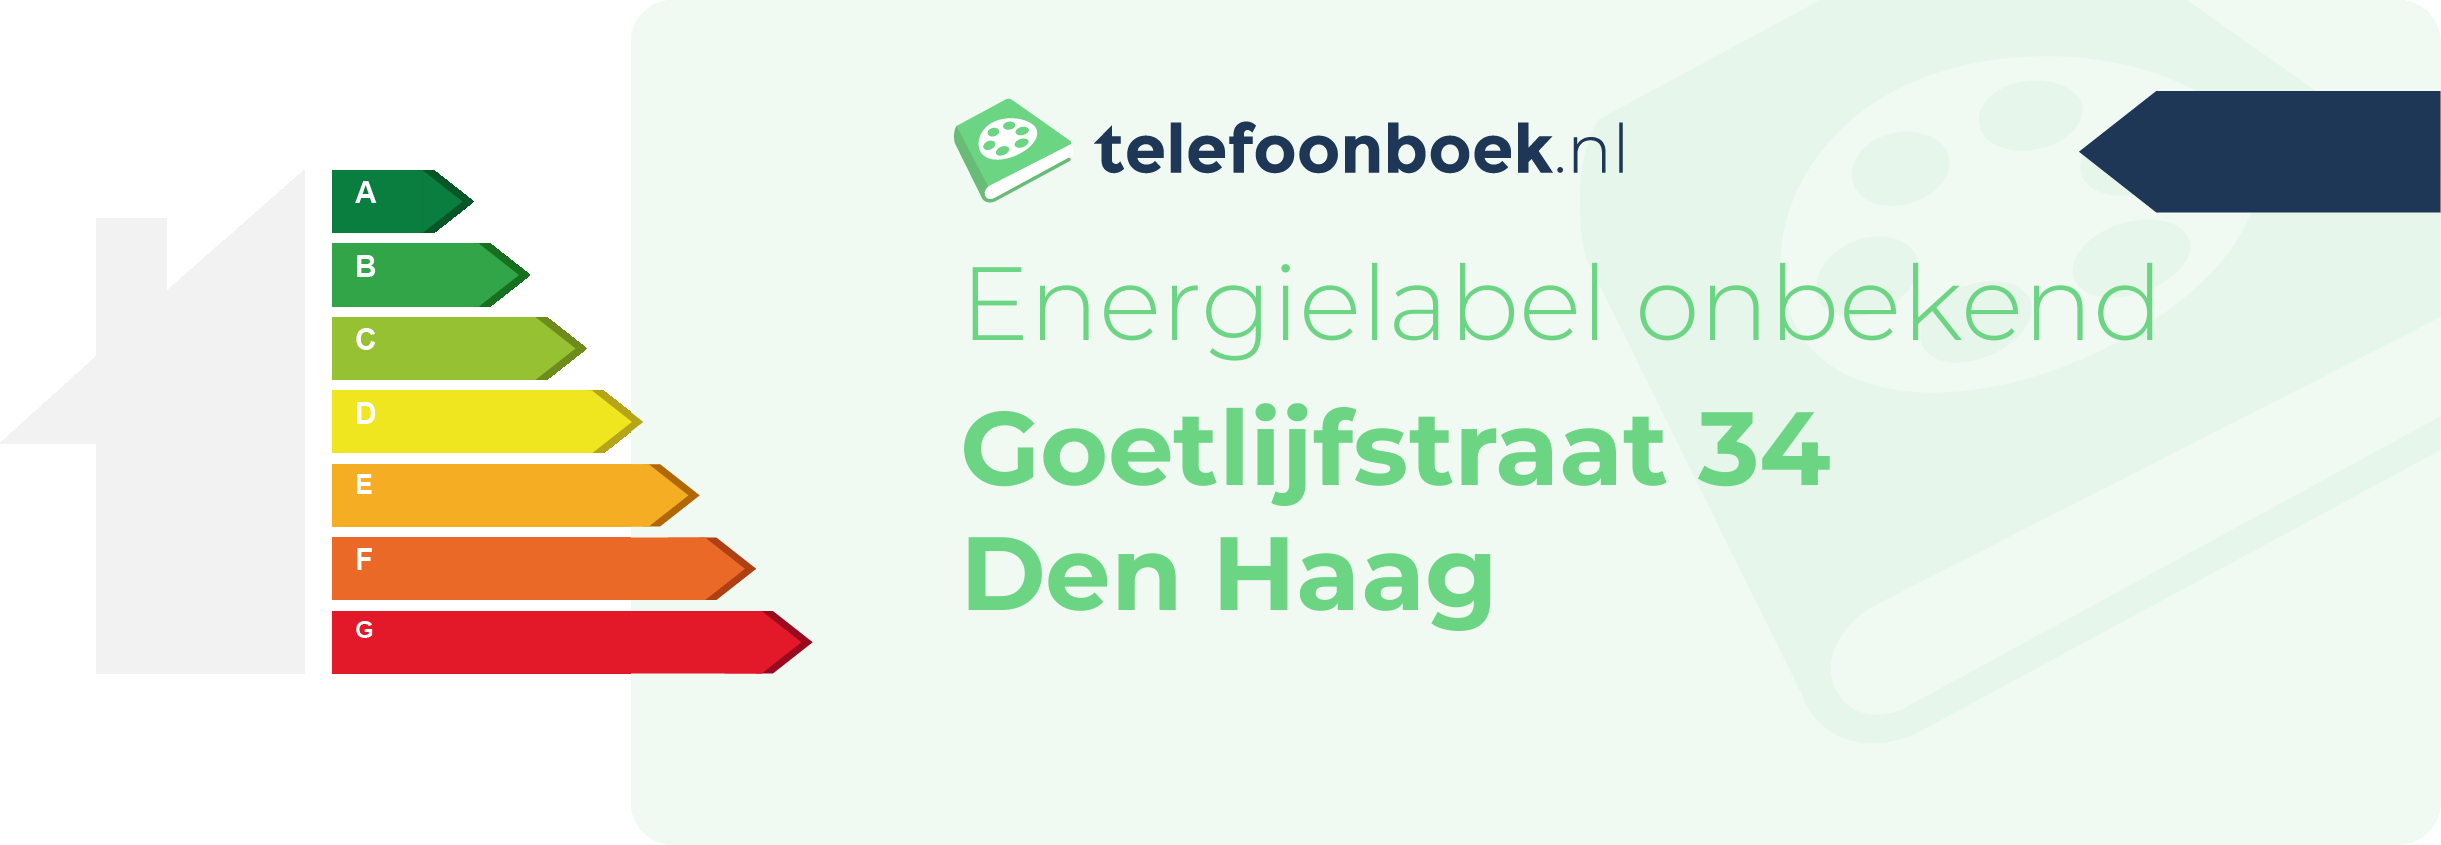 Energielabel Goetlijfstraat 34 Den Haag